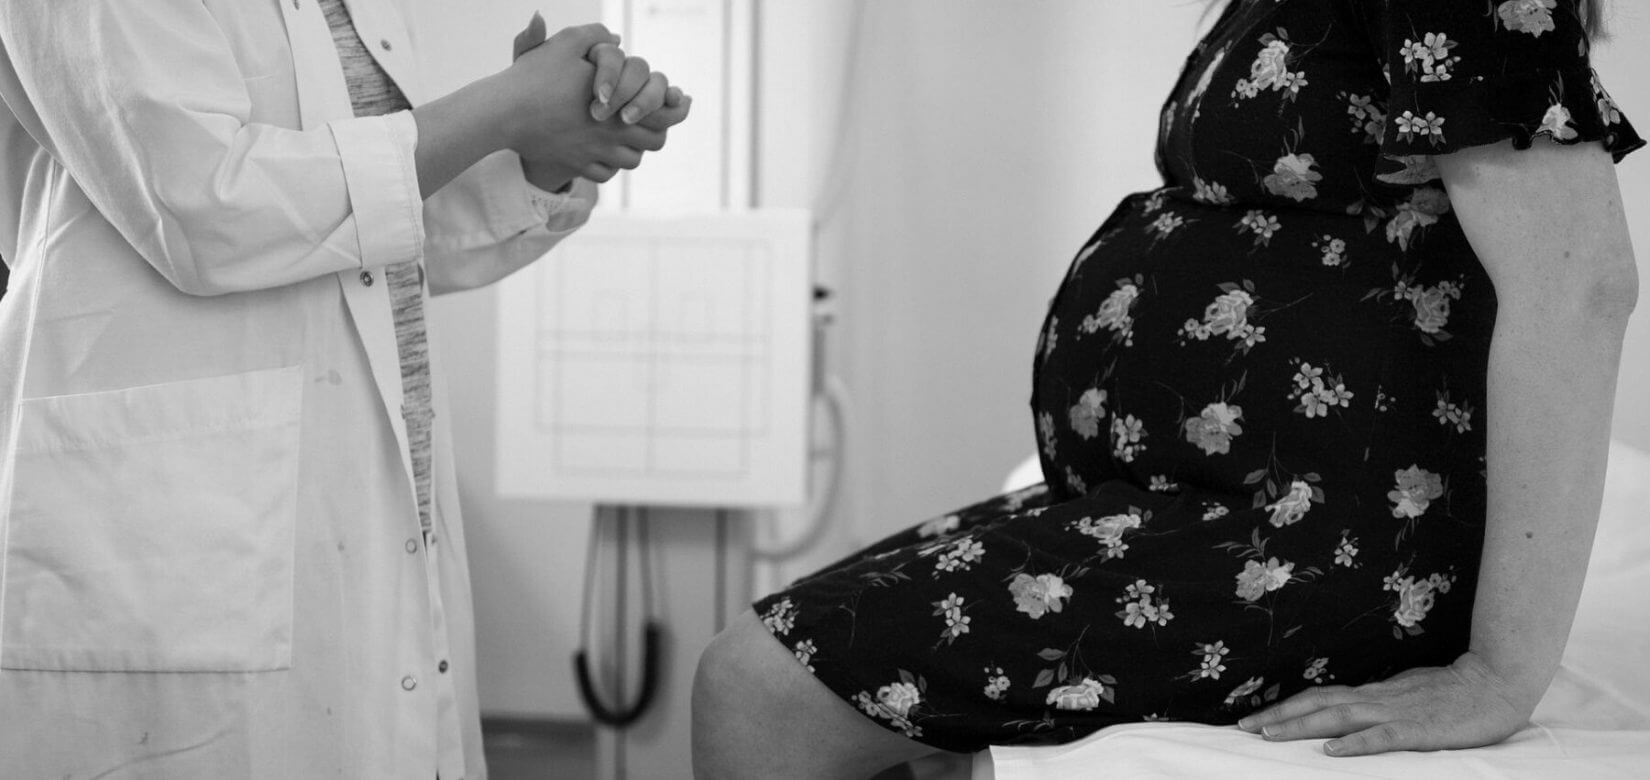 Παιδίατροι και γυναικολόγοι ζητούν να εμβολιαστούν άμεσα έγκυες και παιδιά στην Ιταλία